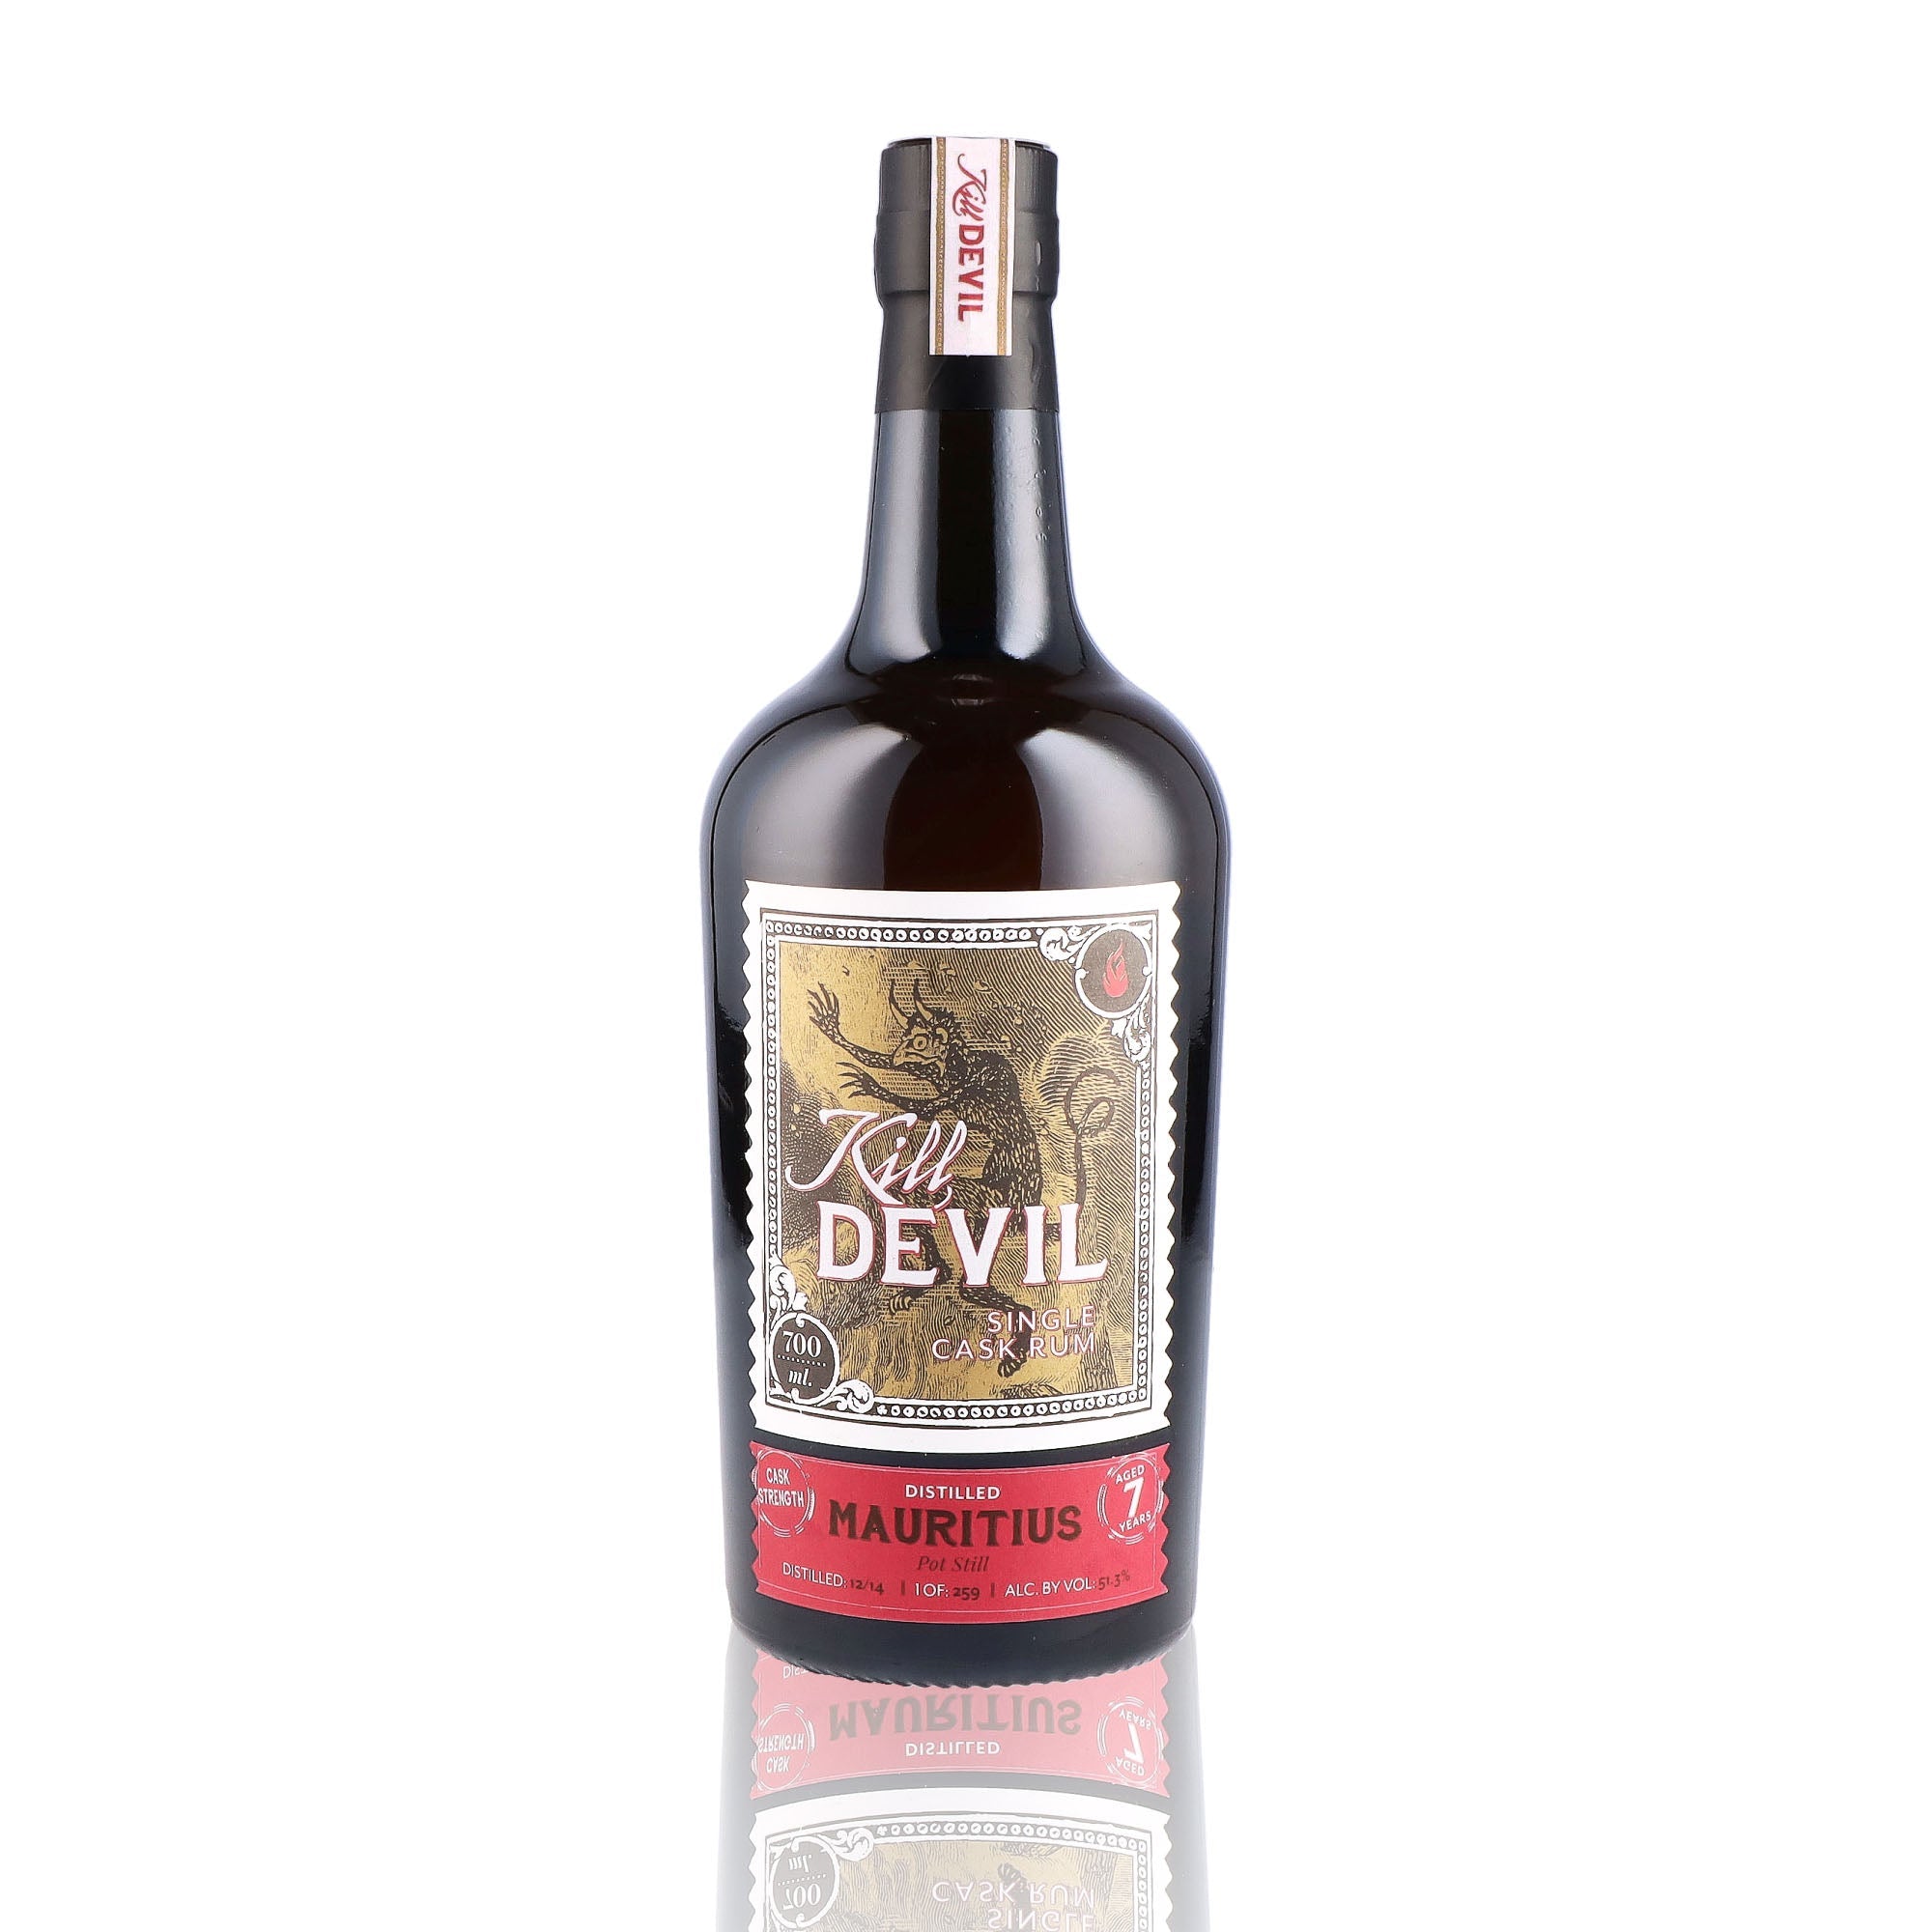 Une bouteille de rhum vieux, de la marque Kill Devil, nommée Mauritius 7 ans Single Cask.